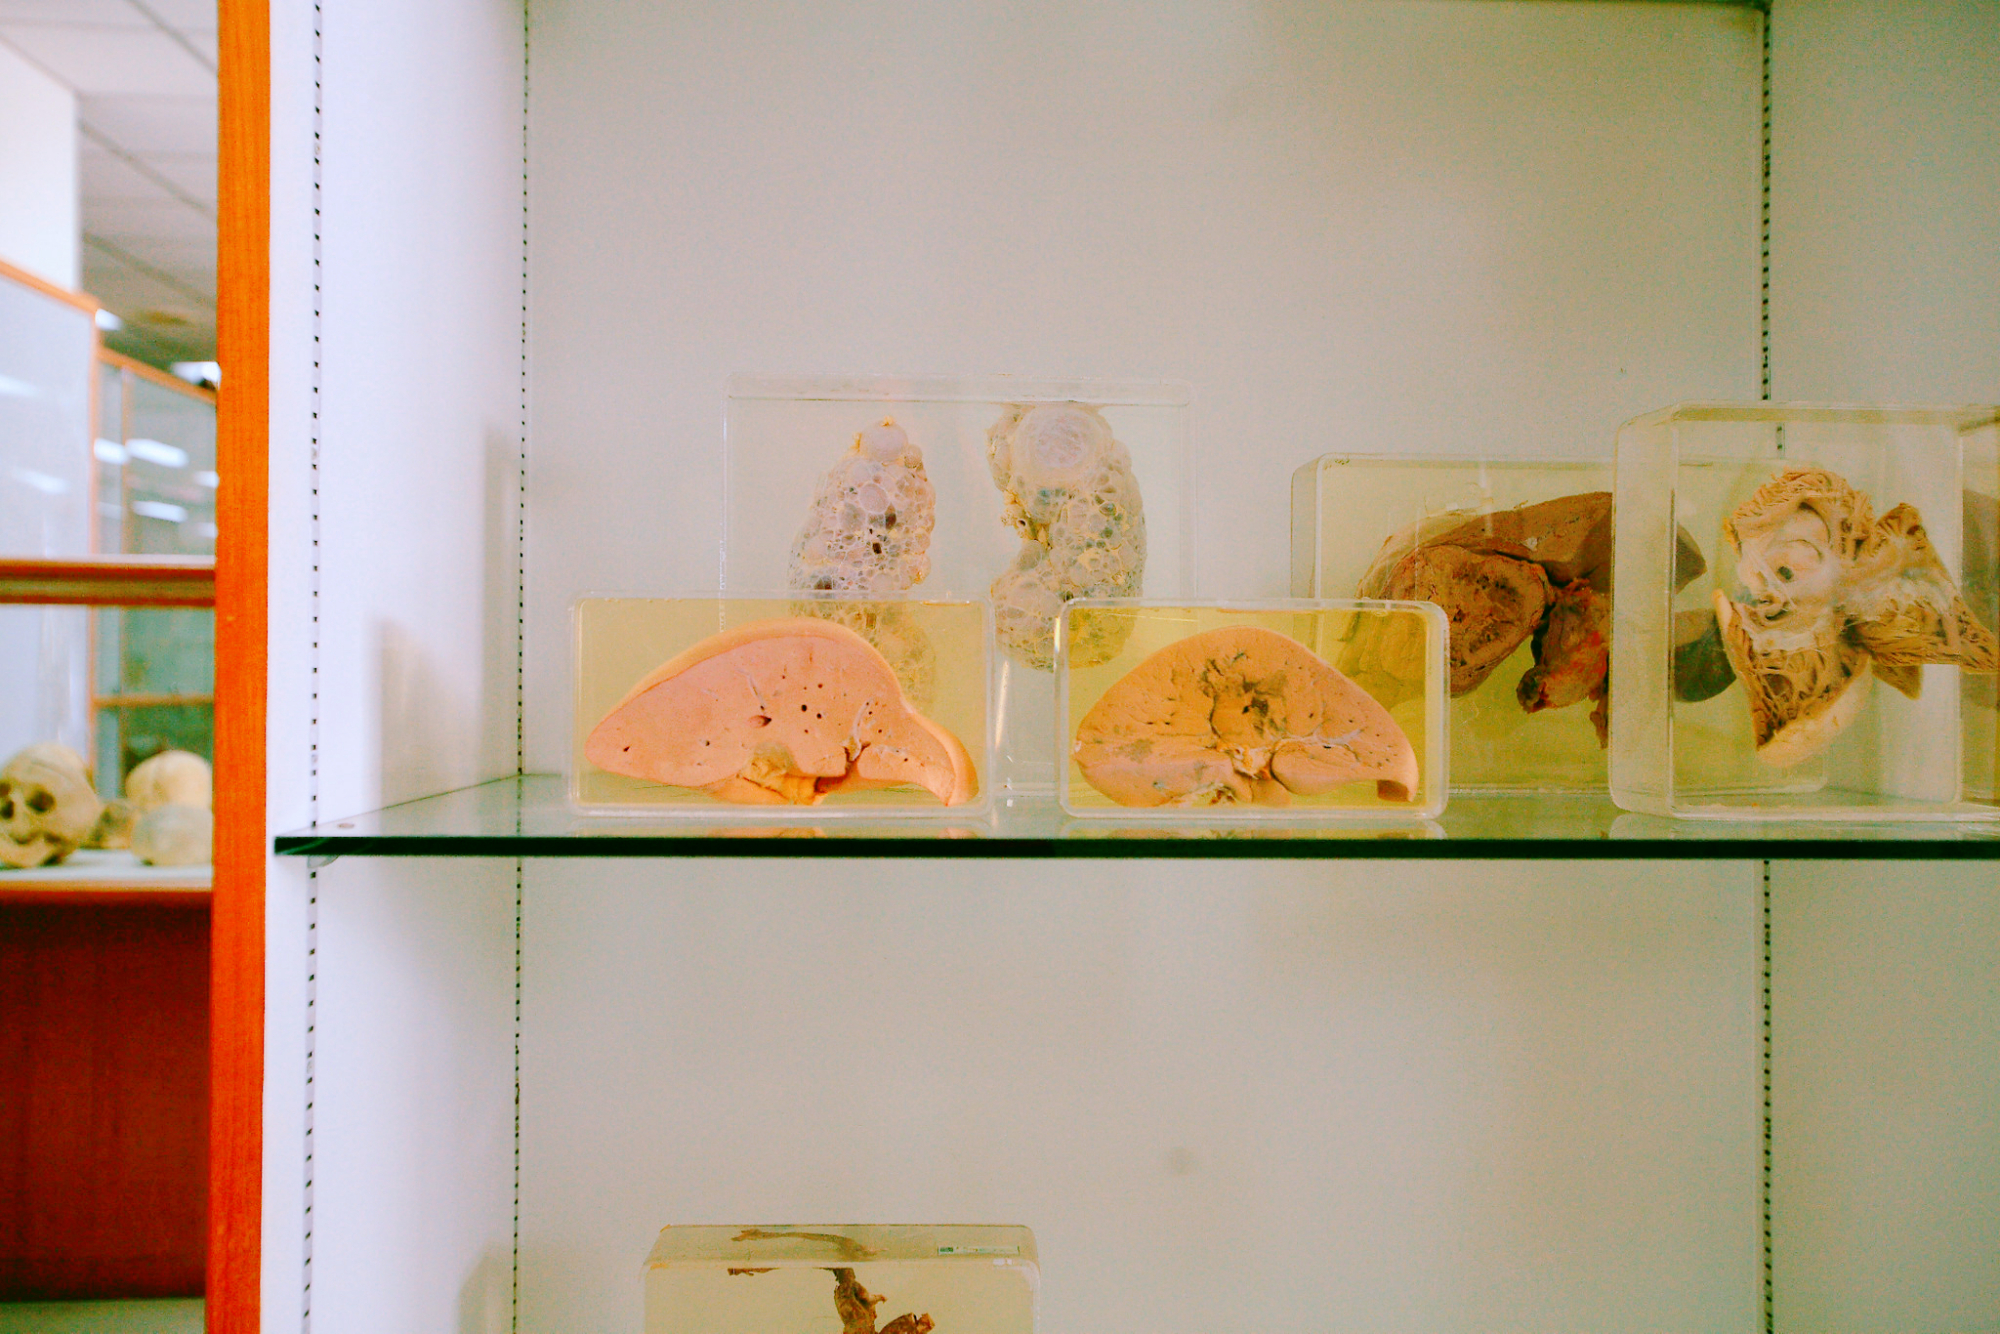 曼谷重口味博物馆,存放着很多婴儿标本,当地人都很少去